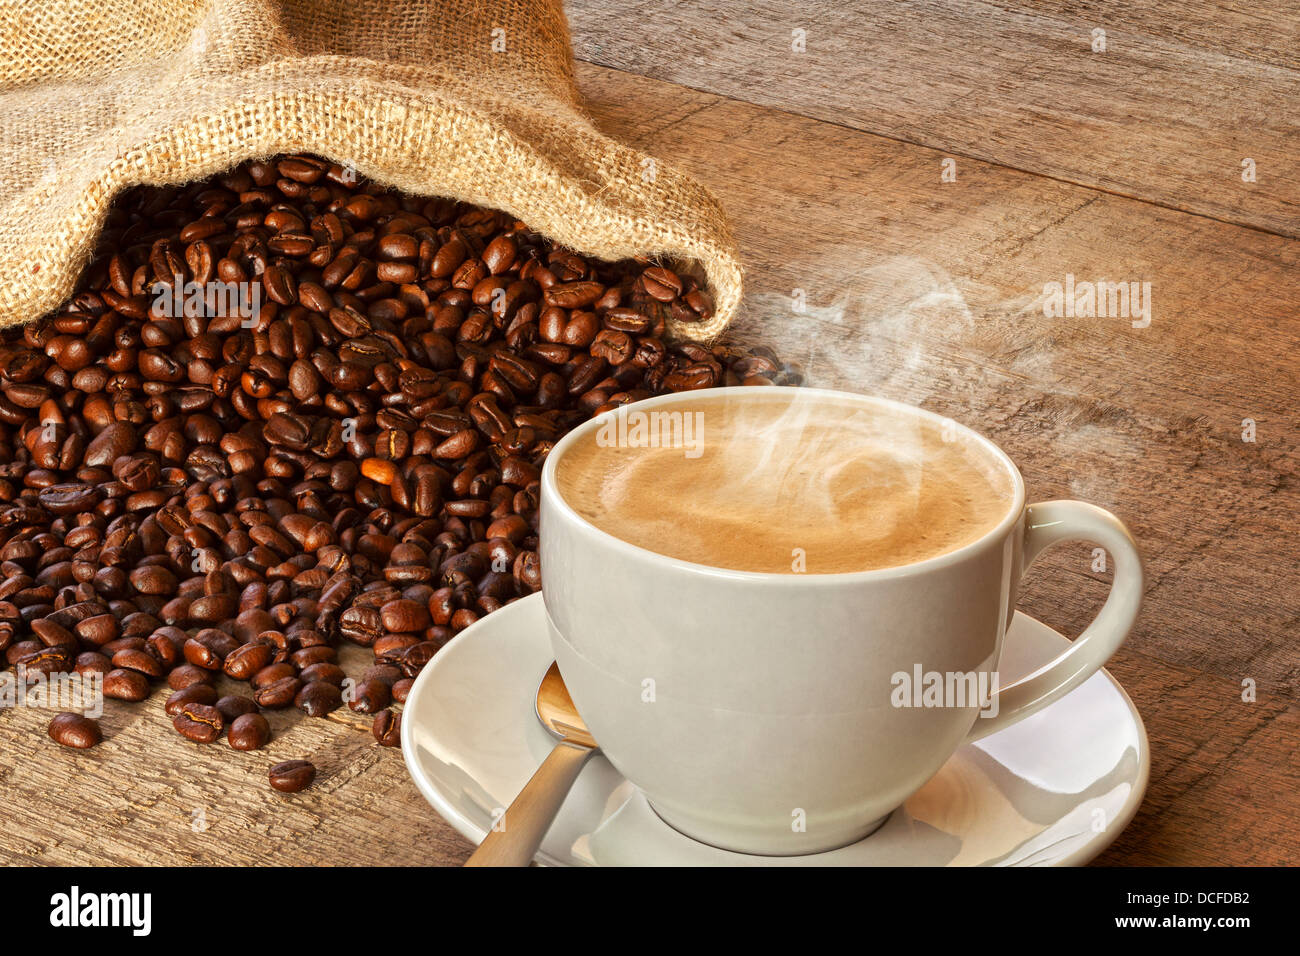 Le café et le sac de grains de café - une tasse de café espresso vapeur chaude sur une planche rustique, avec un sac de café... Banque D'Images